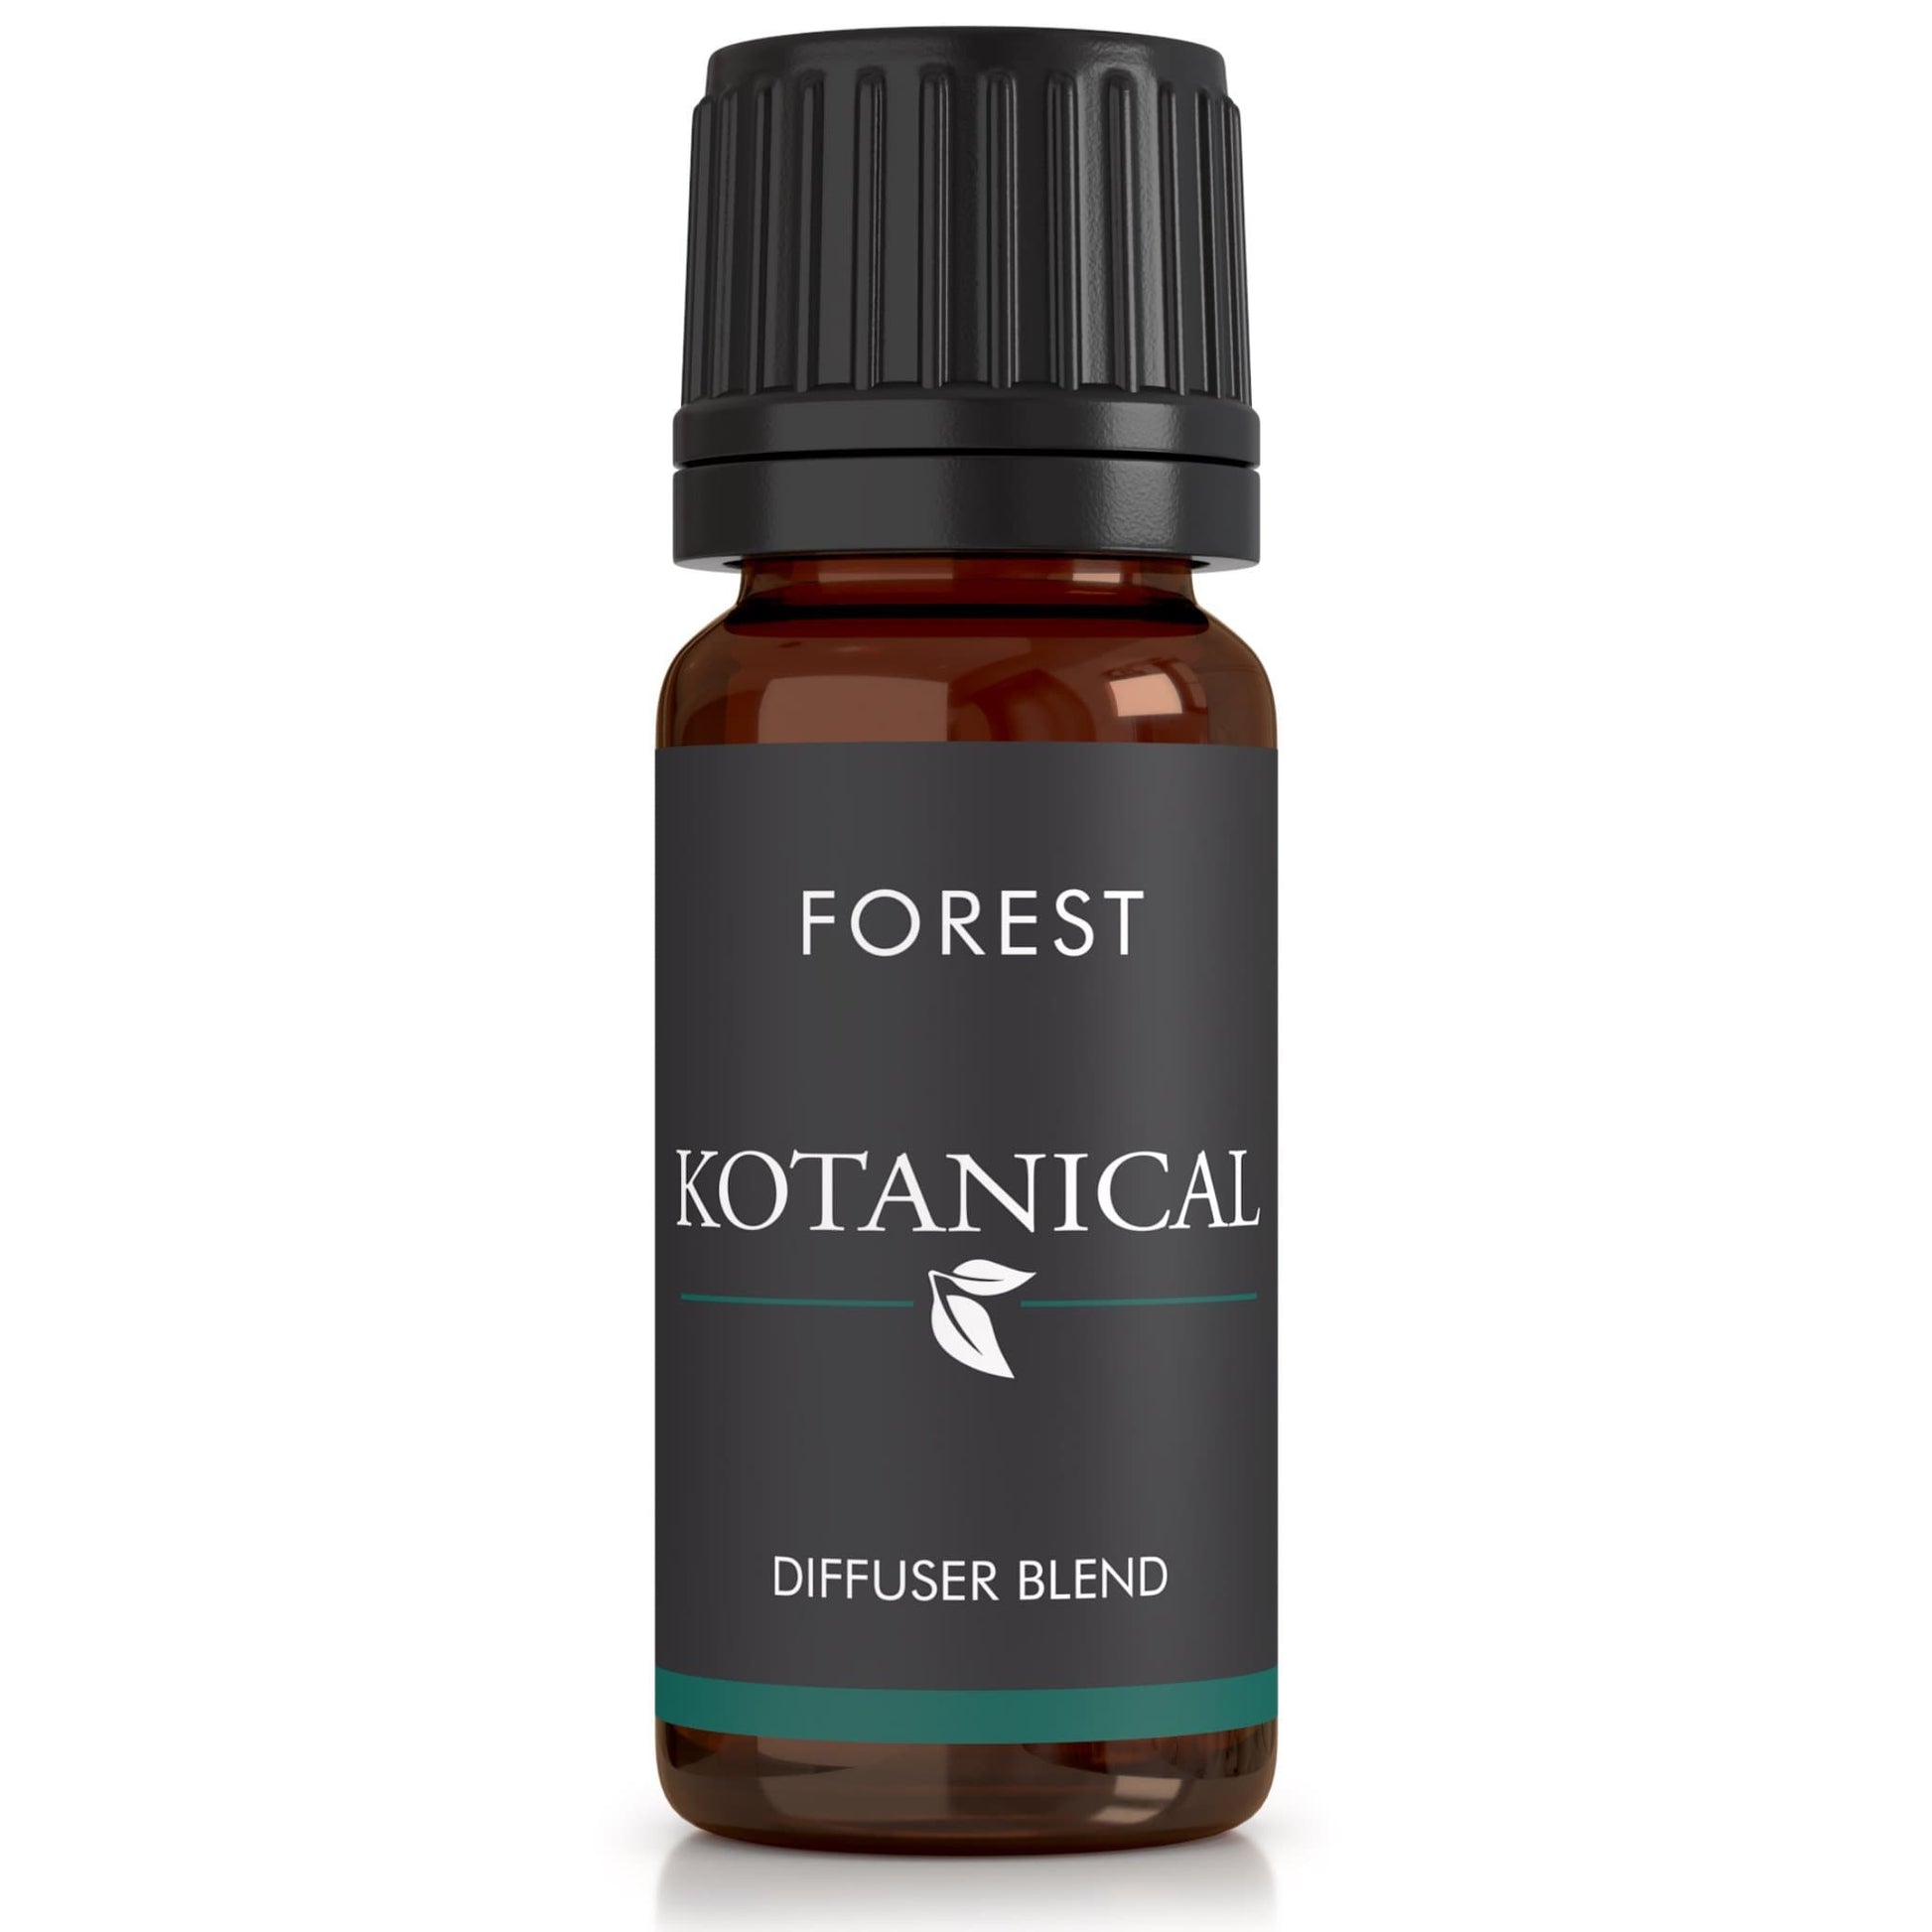 Forest Oil Diffuser Blend essential oil kotanical 